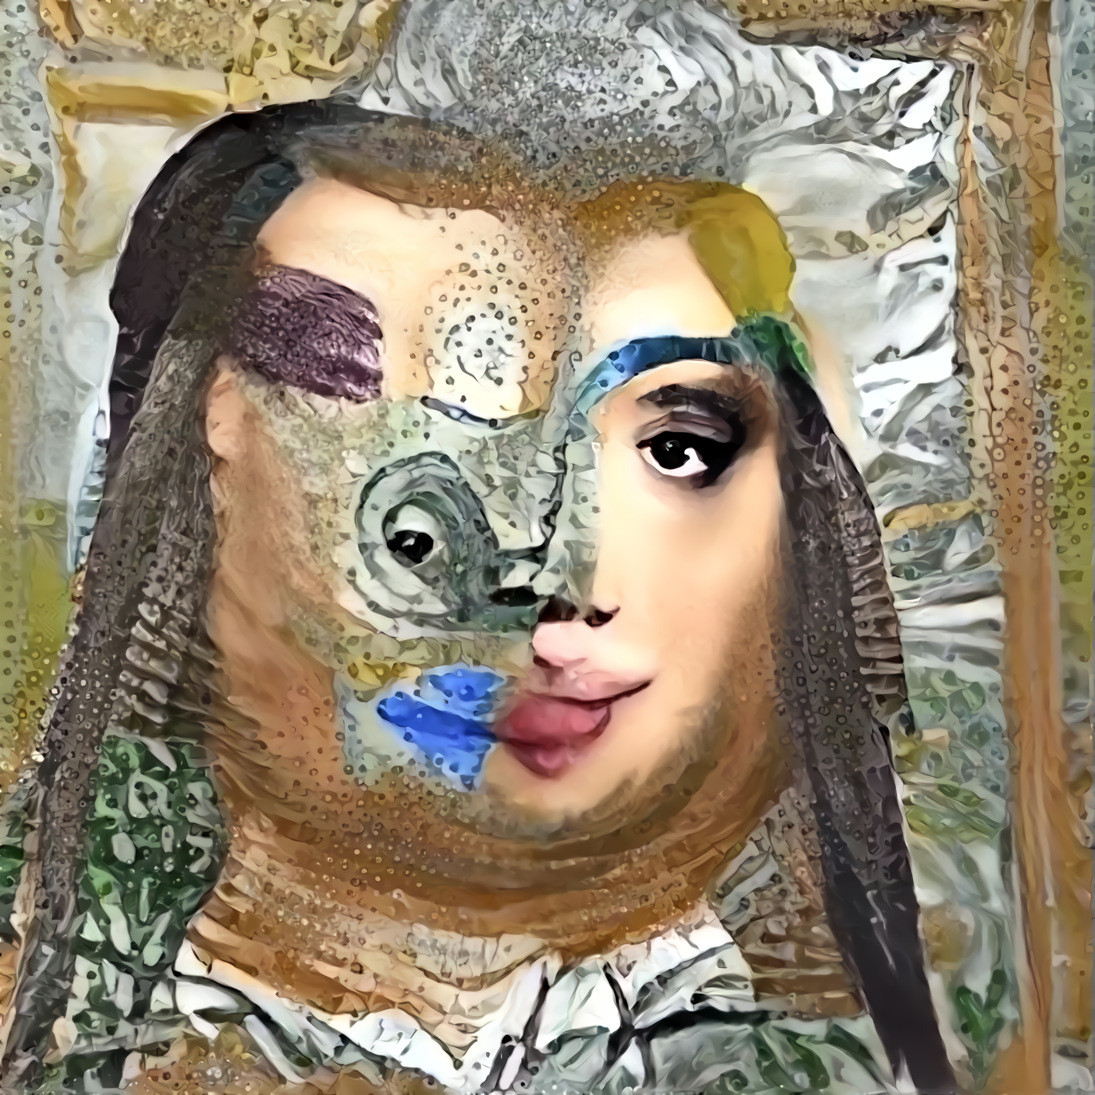 Pablo Picasso paints the Mona Lisa